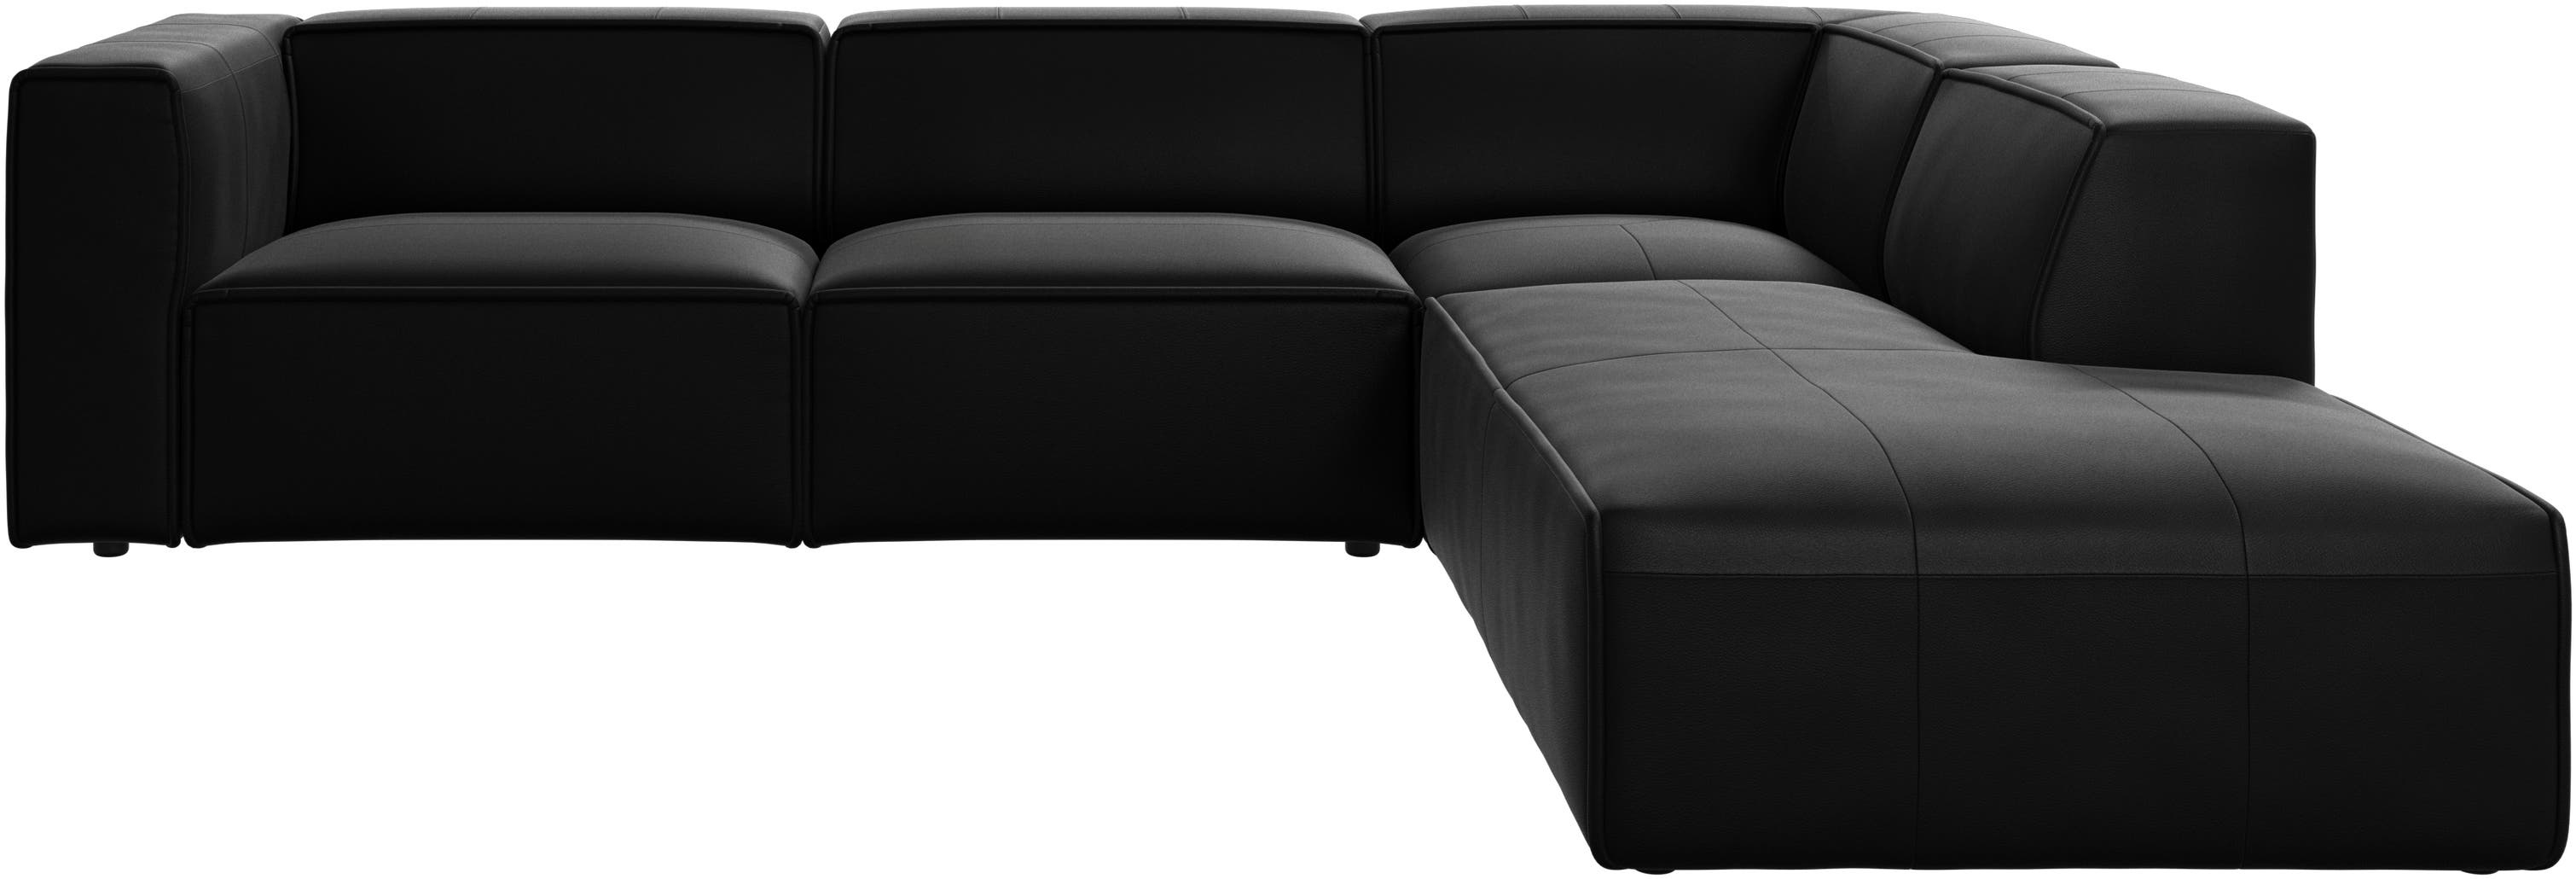 γωνιακός καναπές Carmo με μονάδα lounging